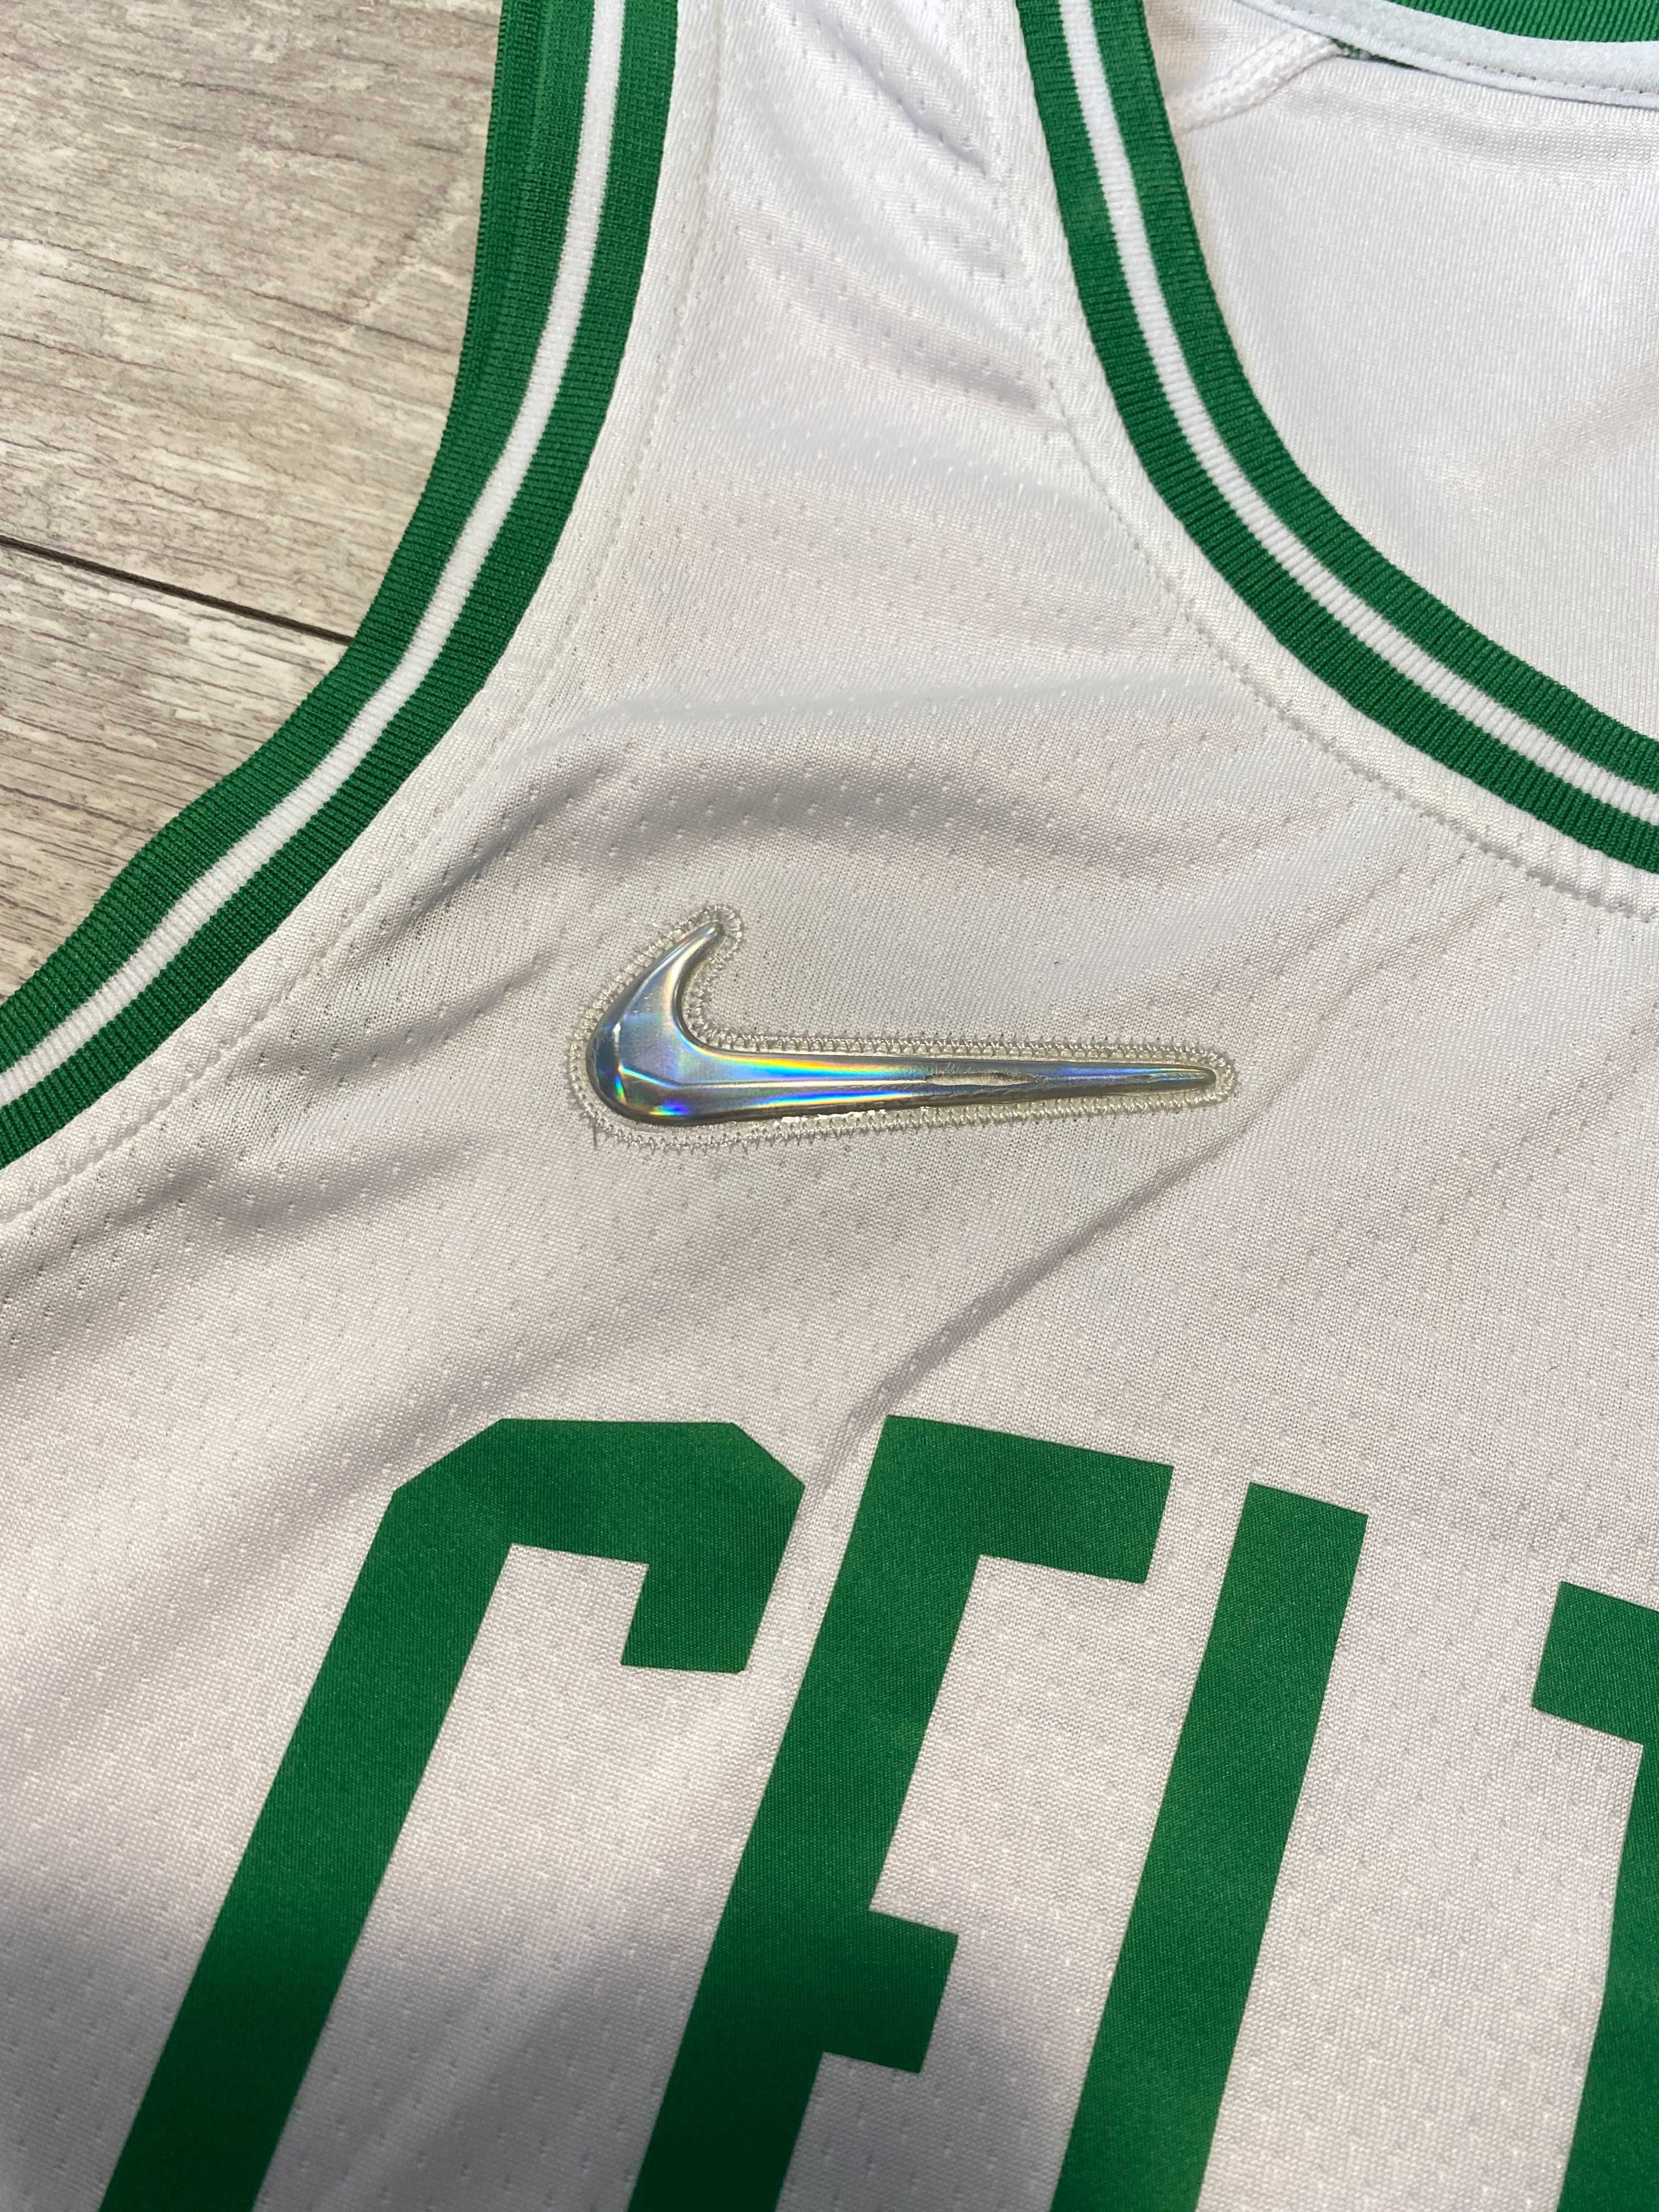 Koszulka NBA Jersey Boston Celtics Brown City Swingman Nike M L XL